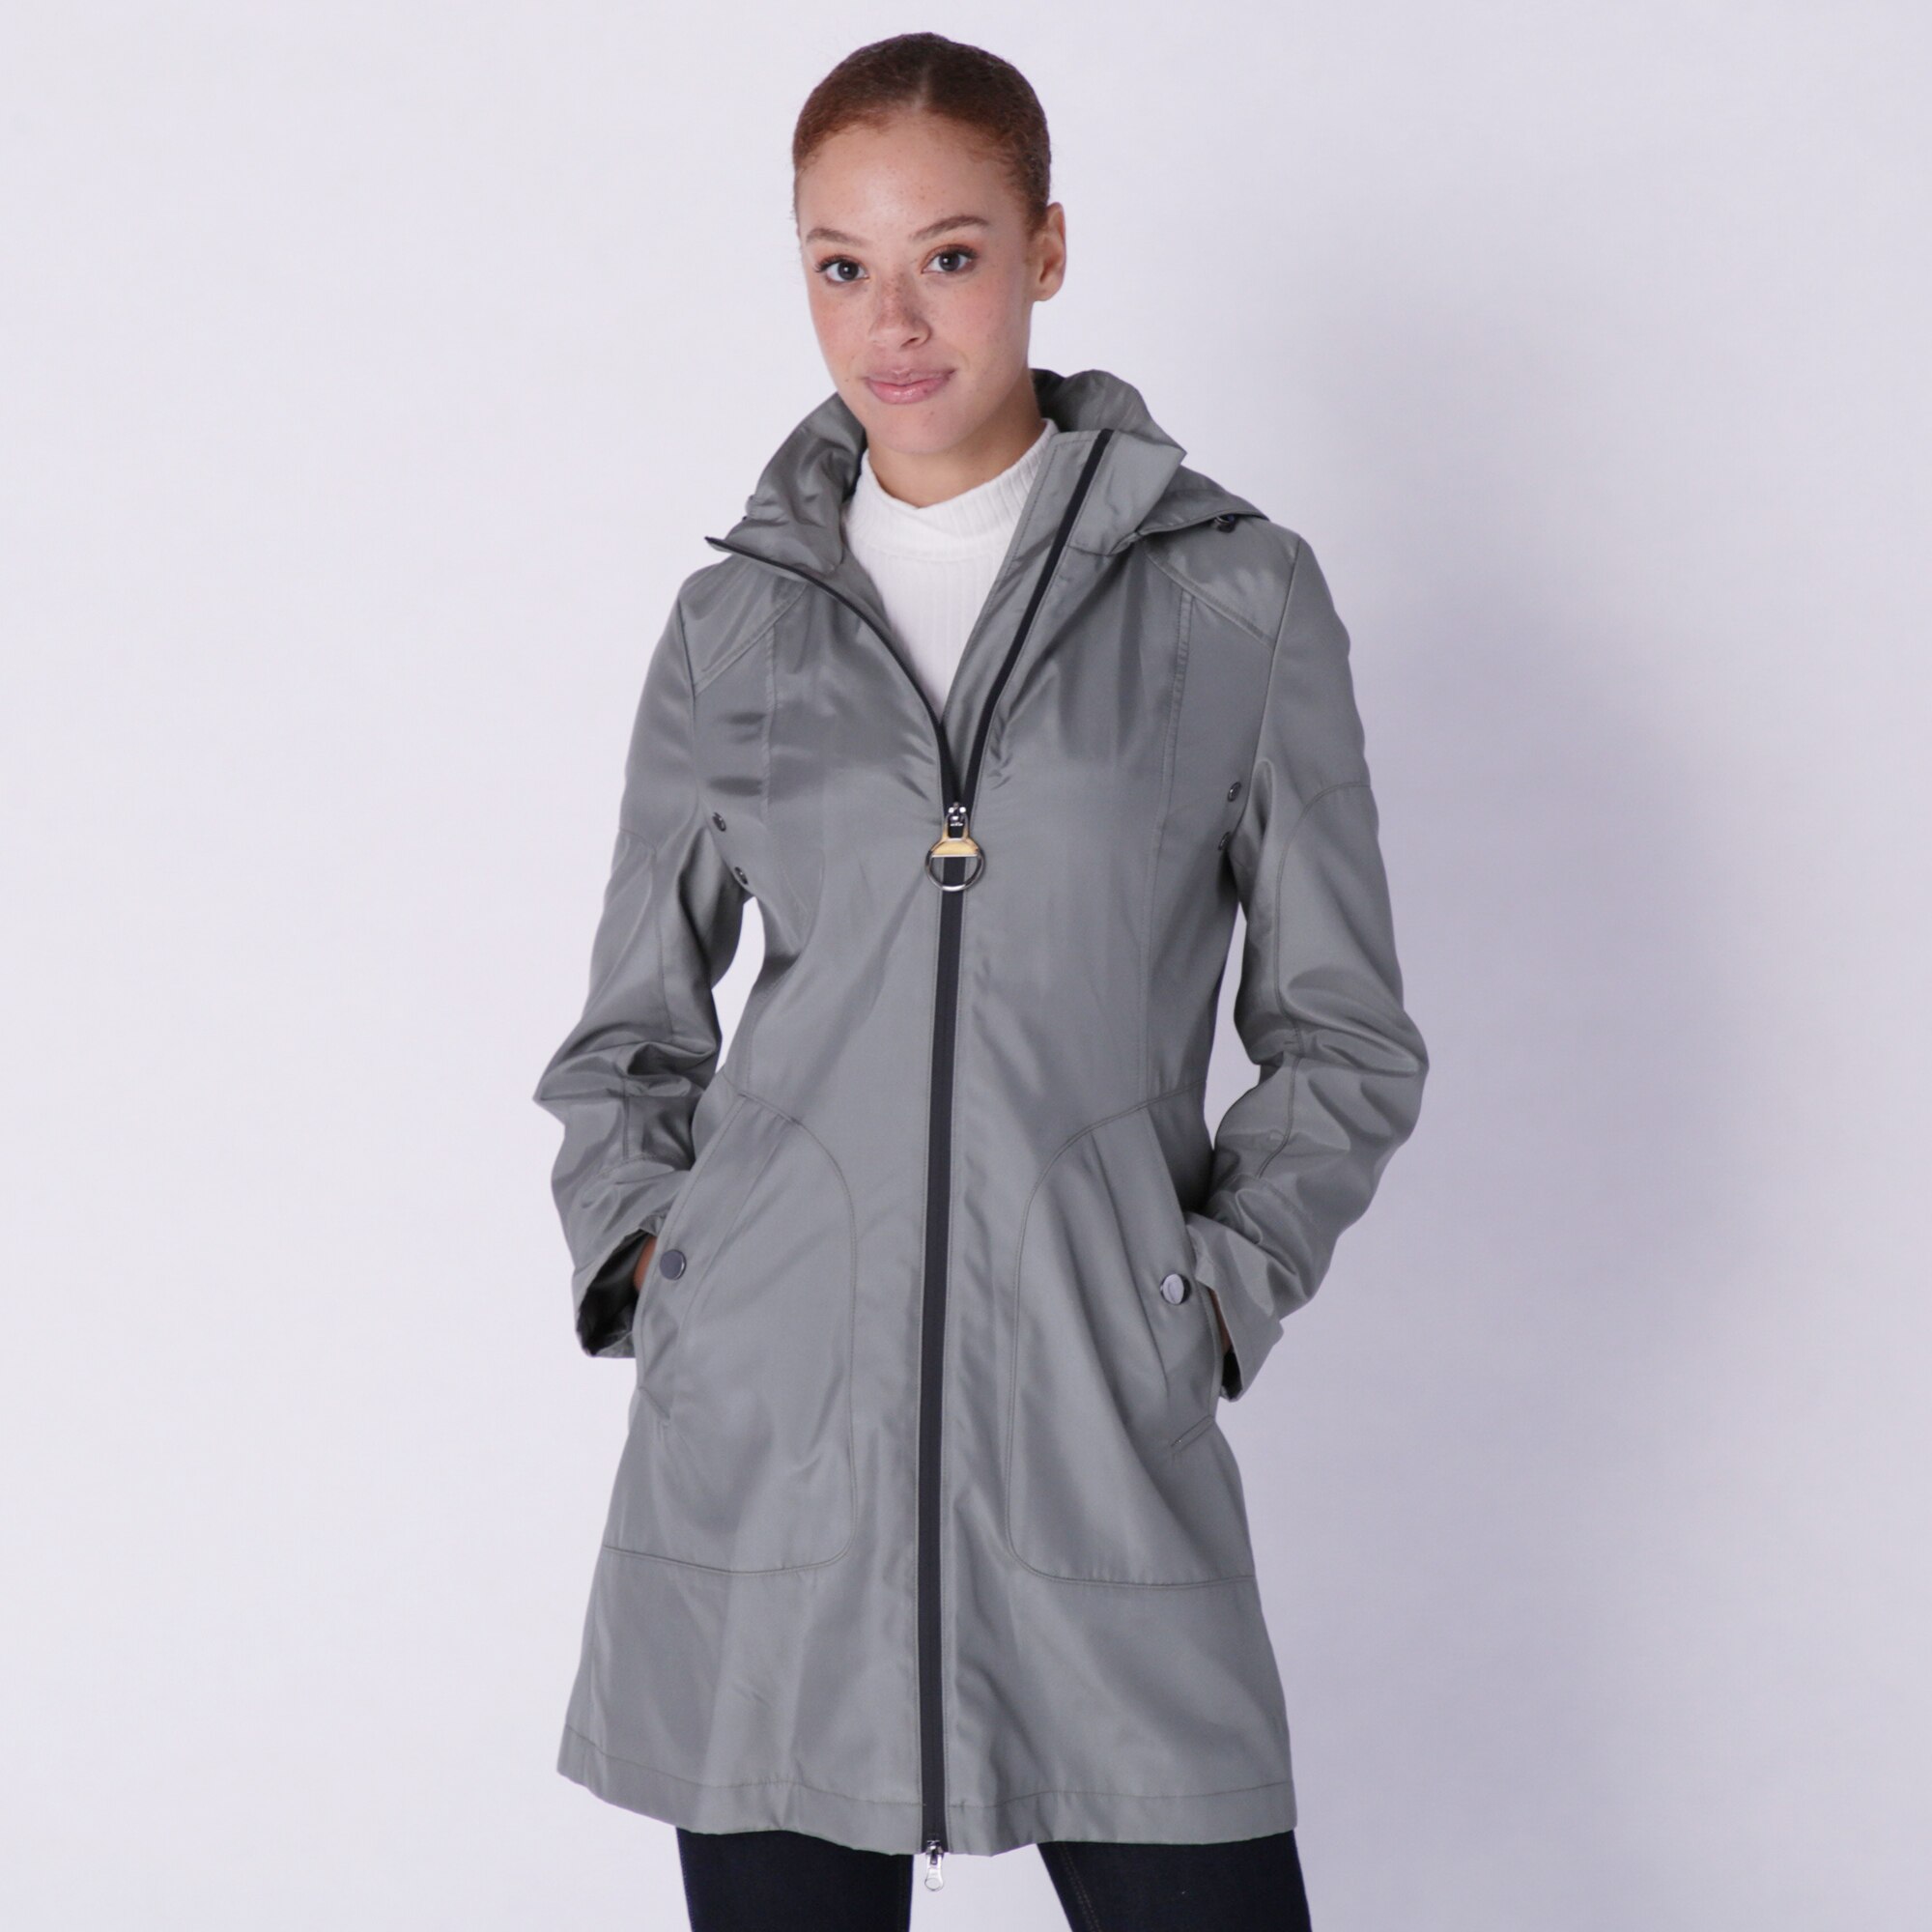 Clothing & Shoes - Jackets & Coats - Rain & Trench Coats - Fen